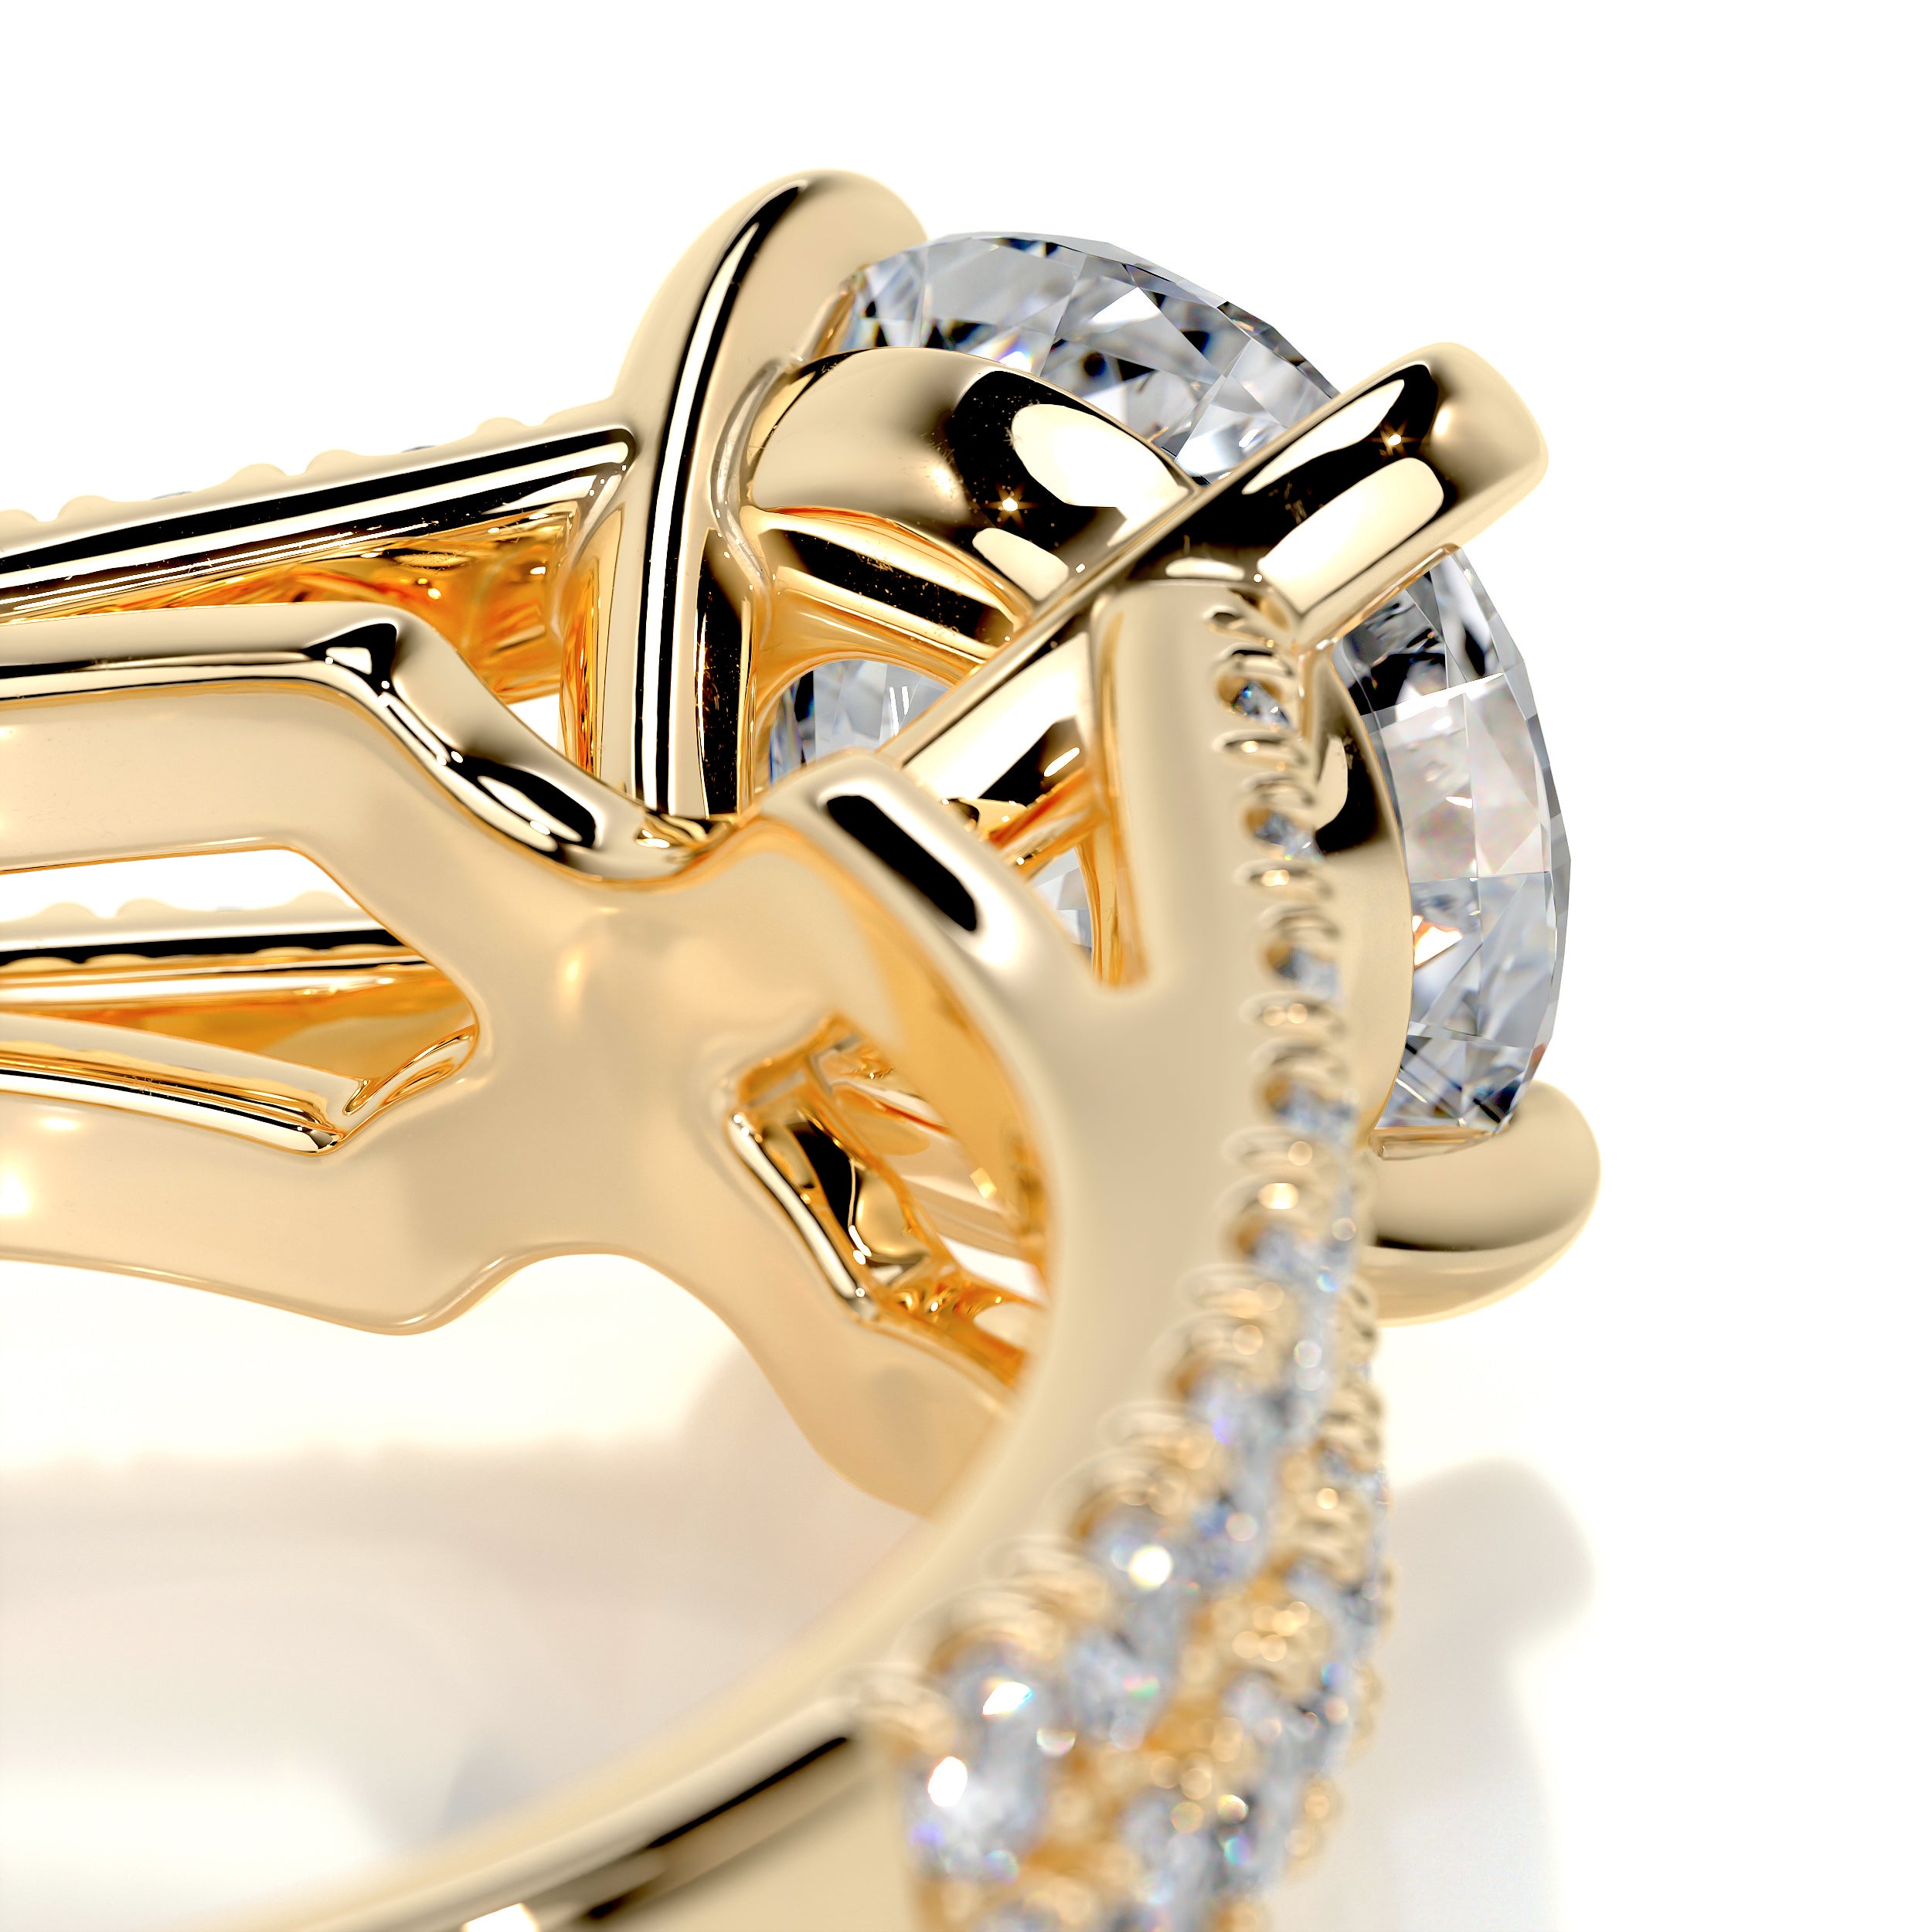 Sadie Diamond Engagement Ring   (2 Carat) -18K Yellow Gold